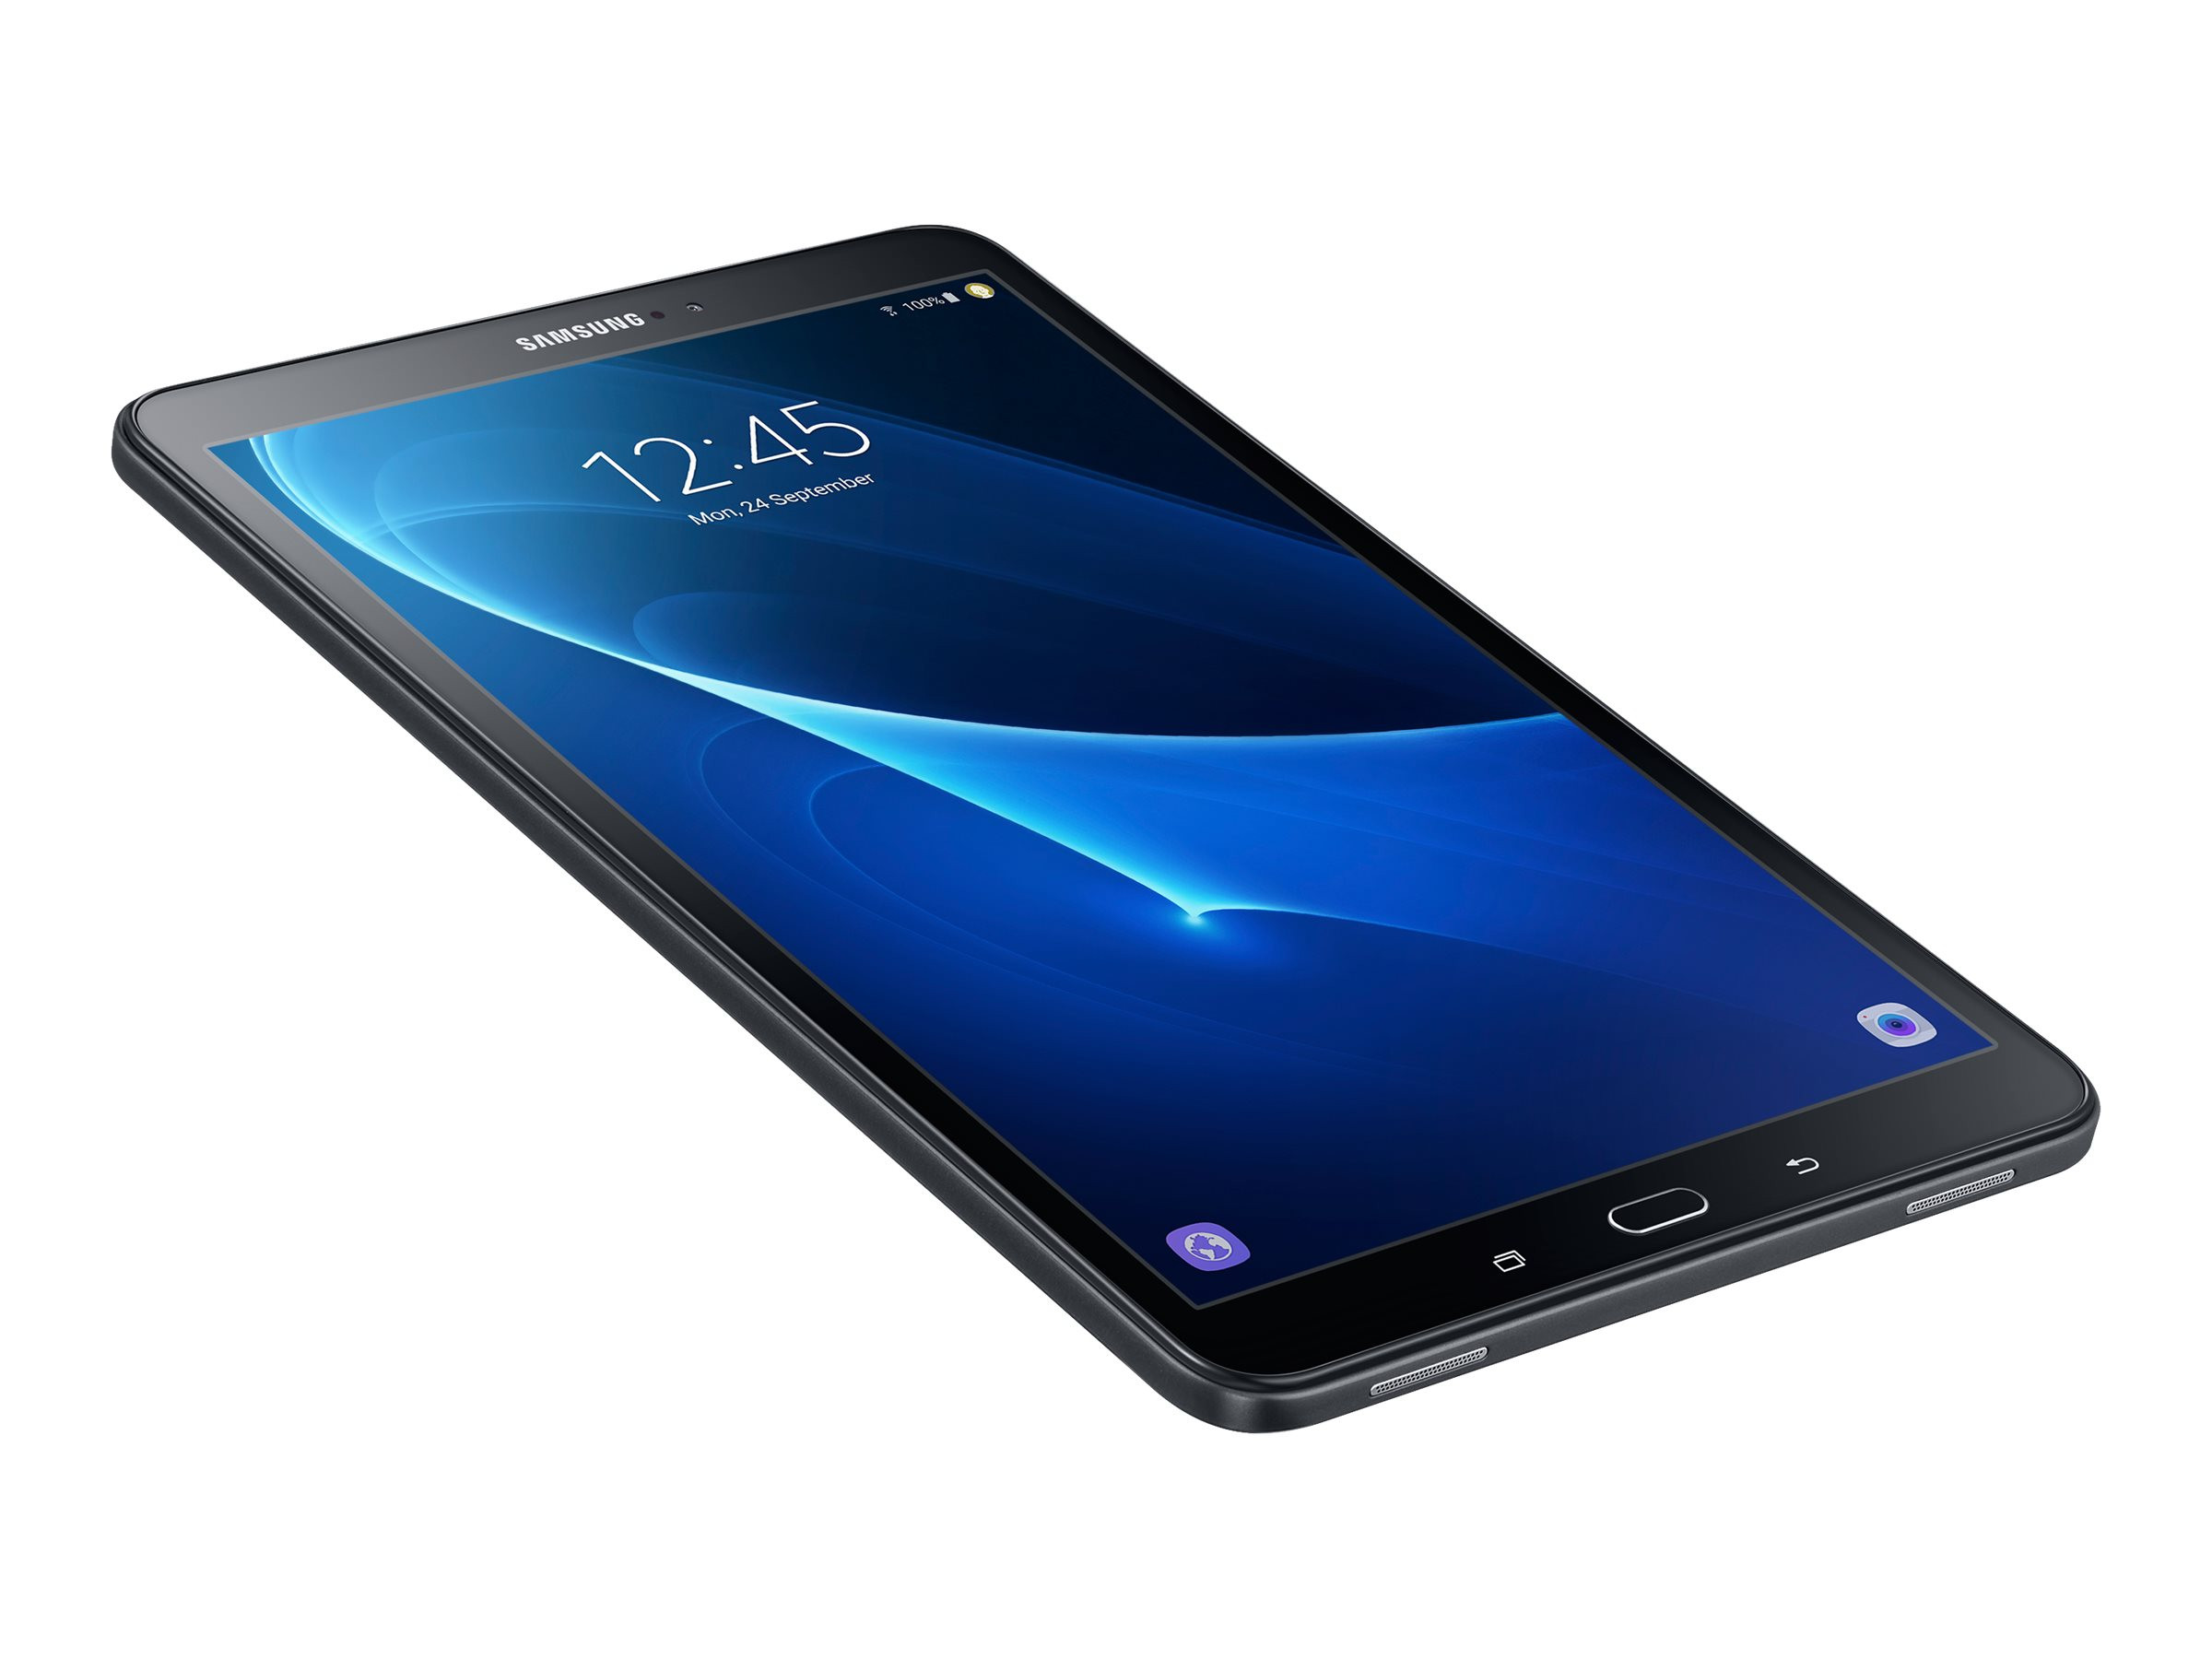 Samsung Galaxy Tab A T585 (2016) 10.1 Zoll 32GB schwarz Wifi LTE Android Full HD